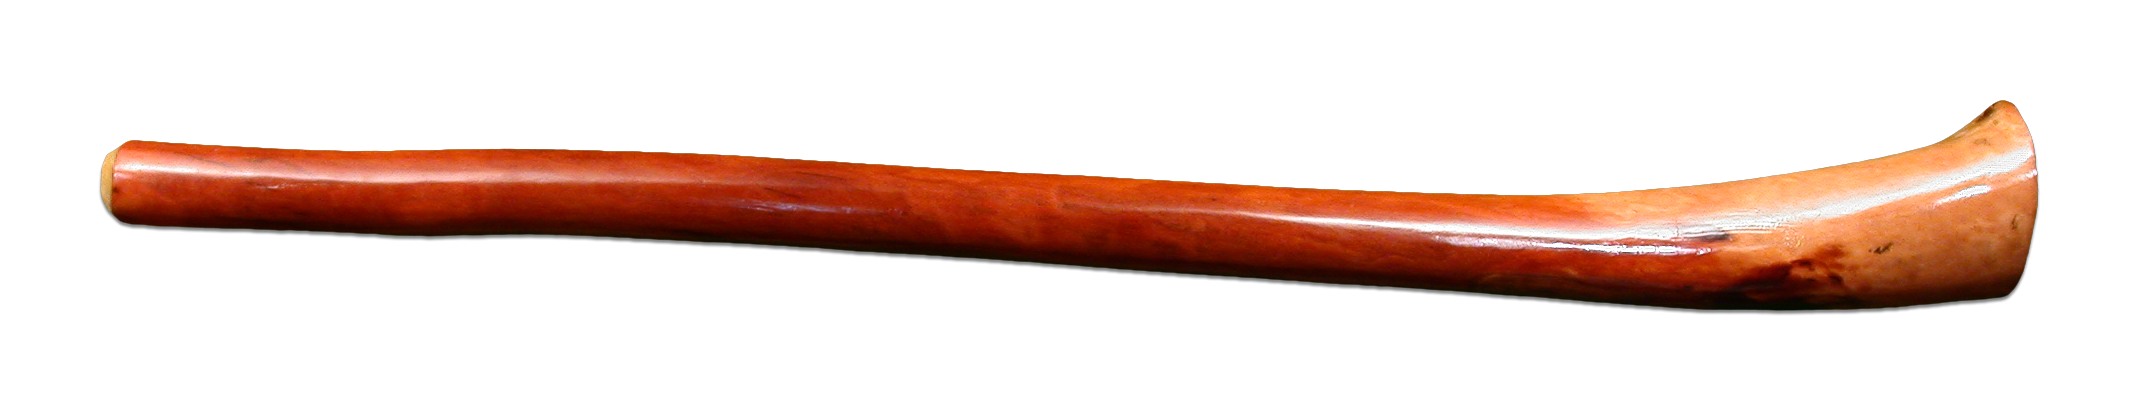 Alternative materials didgeri